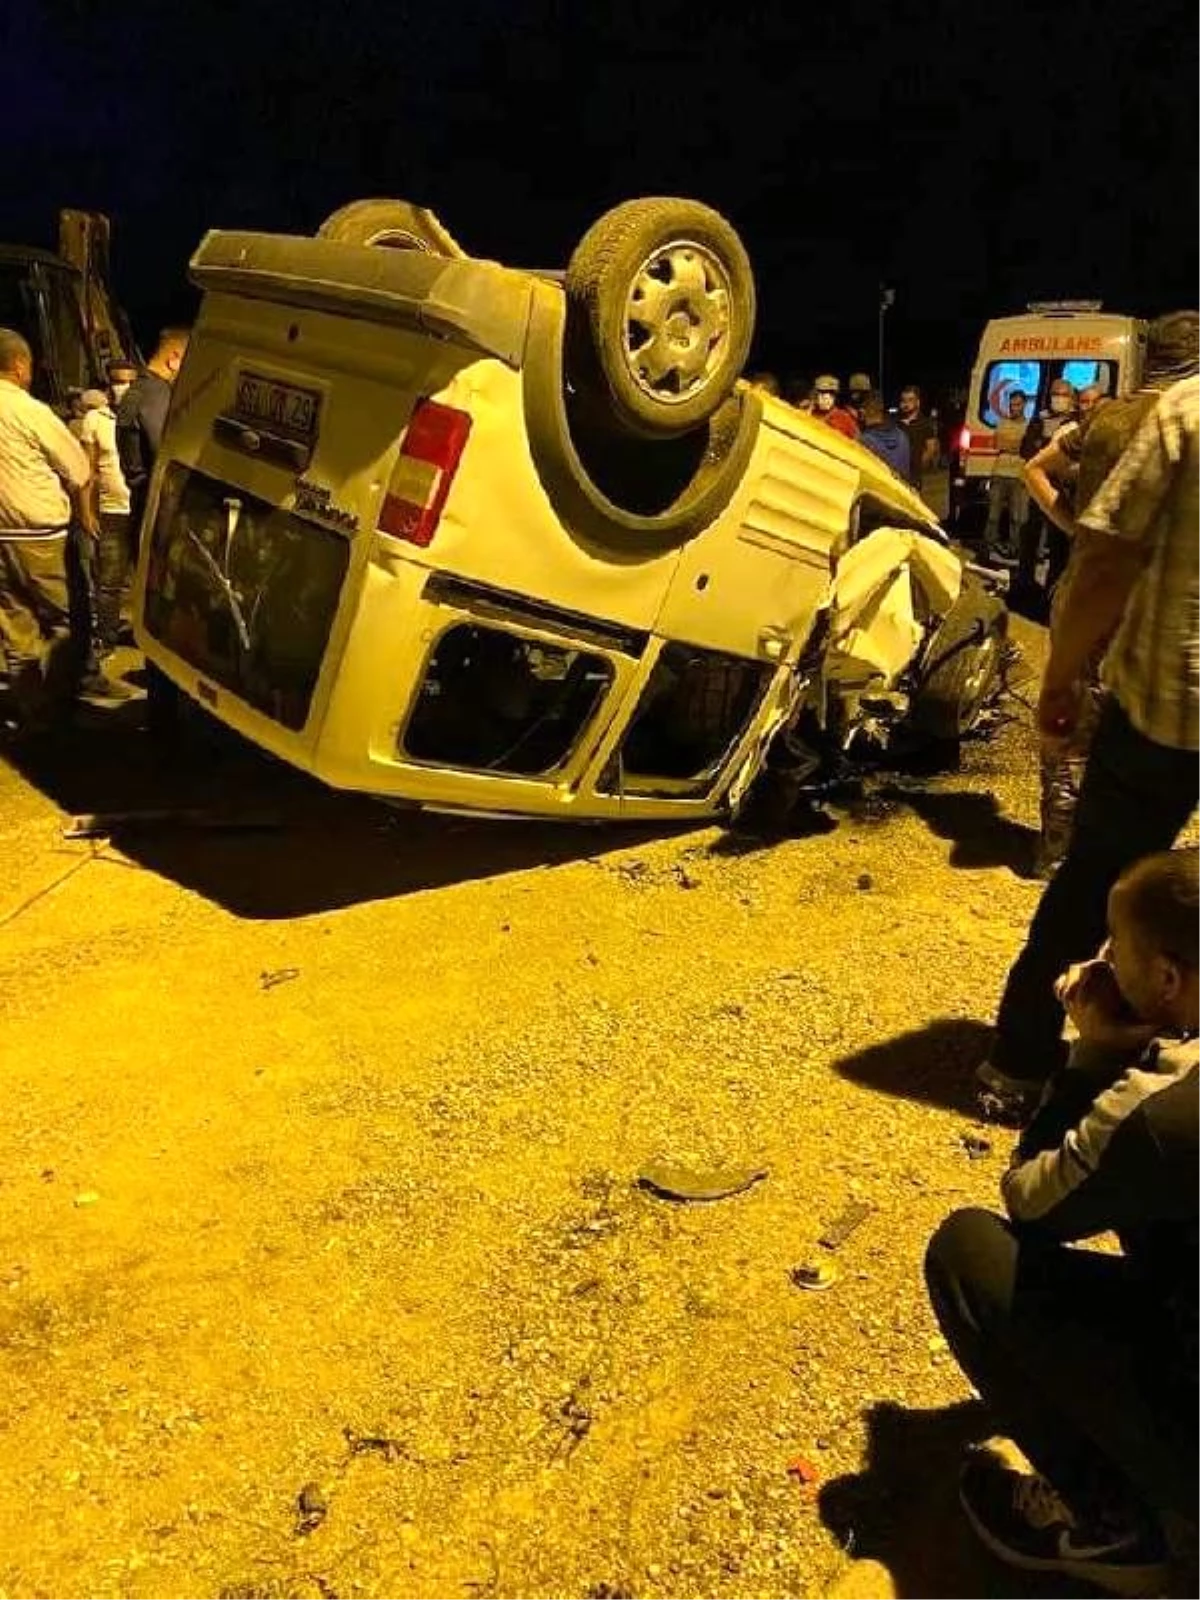 Zırhlı polis aracına çarpıp ters dönen hafif ticari aracın sürücüsü öldü